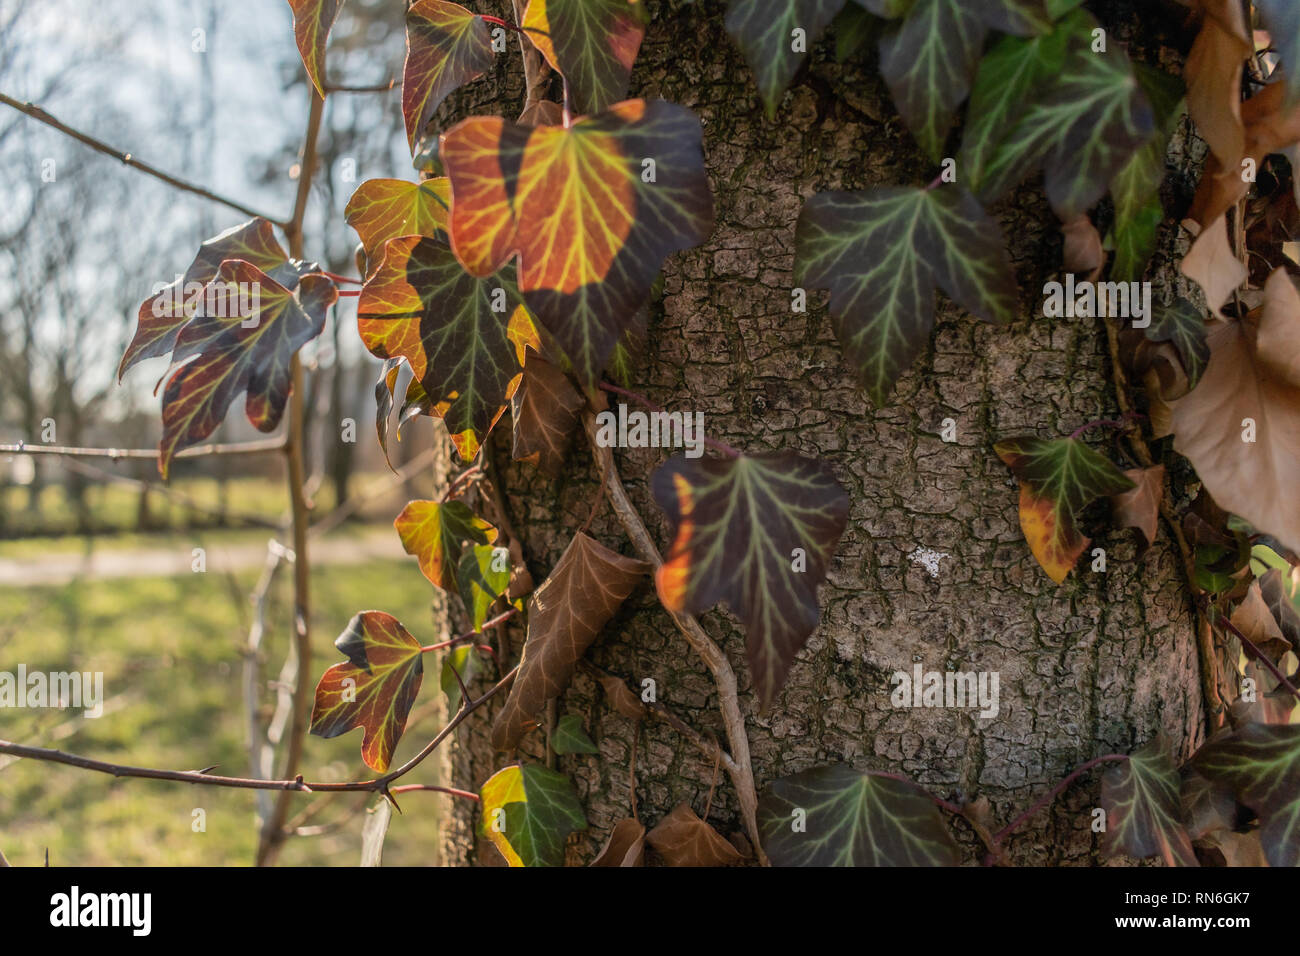 Nahaufnahme der wunderschönen goldenen Stunde Ranken und Blätter wachsen auf einem städtischen Park Baum Stockfoto